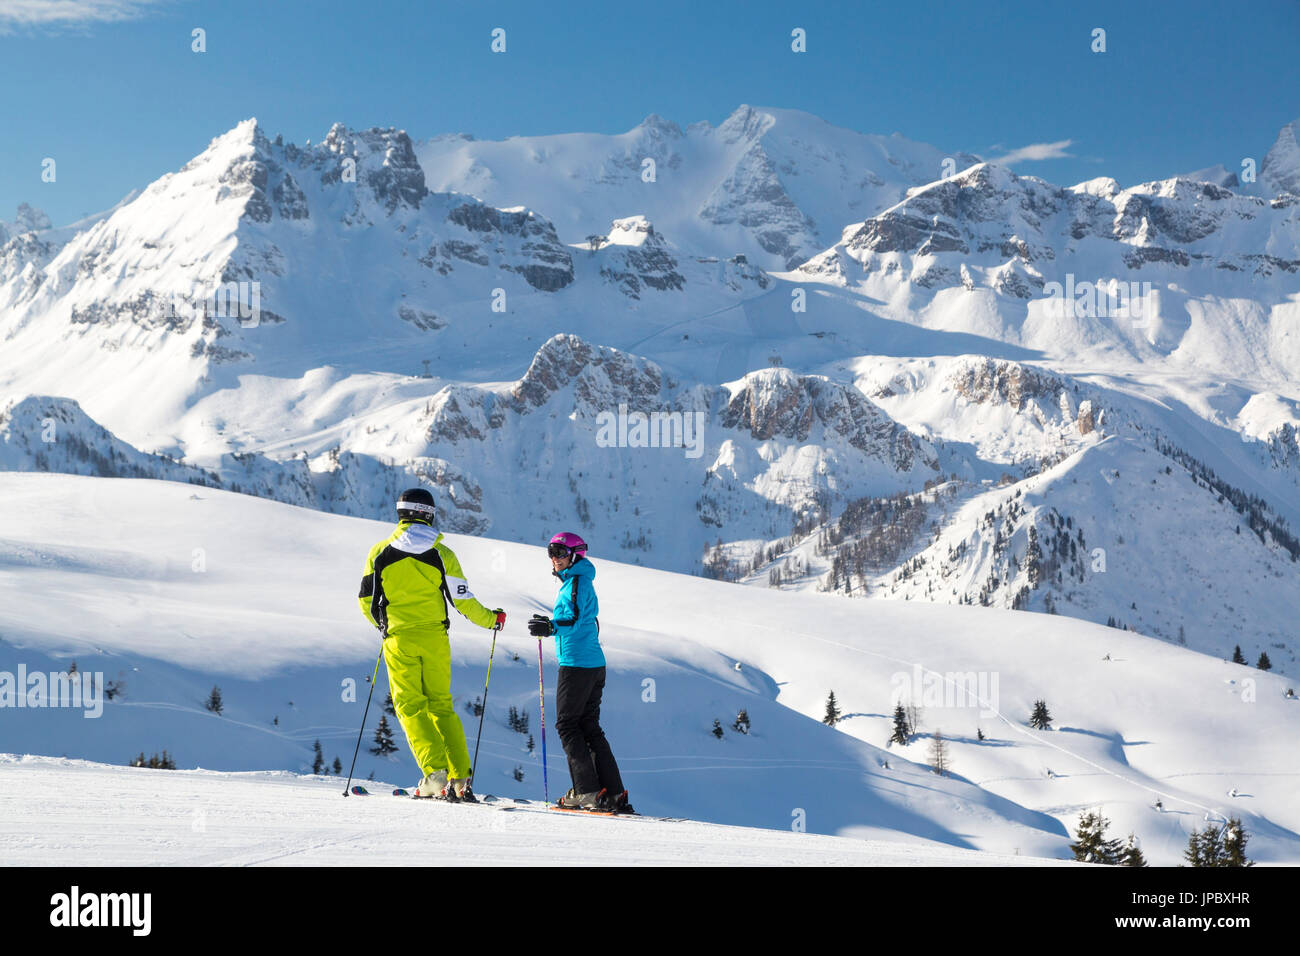 Skifahrer auf Skipisten von Cherz, umrahmt von den hohen Gipfeln der Marmolada und Pladen Arabba Dolomiten Belluno Venetien Italien Europa Stockfoto